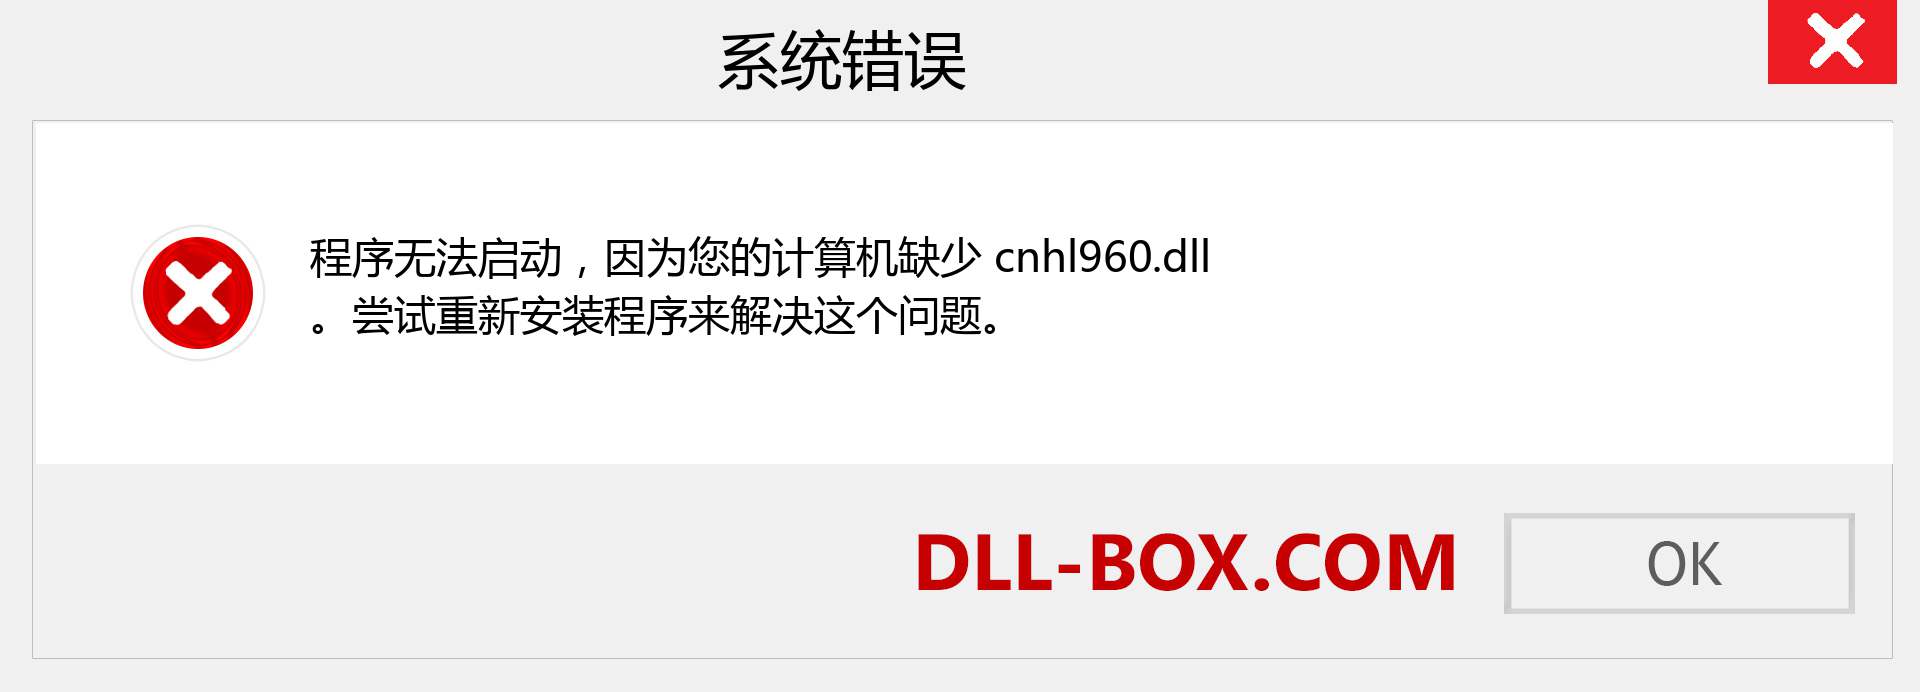 cnhl960.dll 文件丢失？。 适用于 Windows 7、8、10 的下载 - 修复 Windows、照片、图像上的 cnhl960 dll 丢失错误